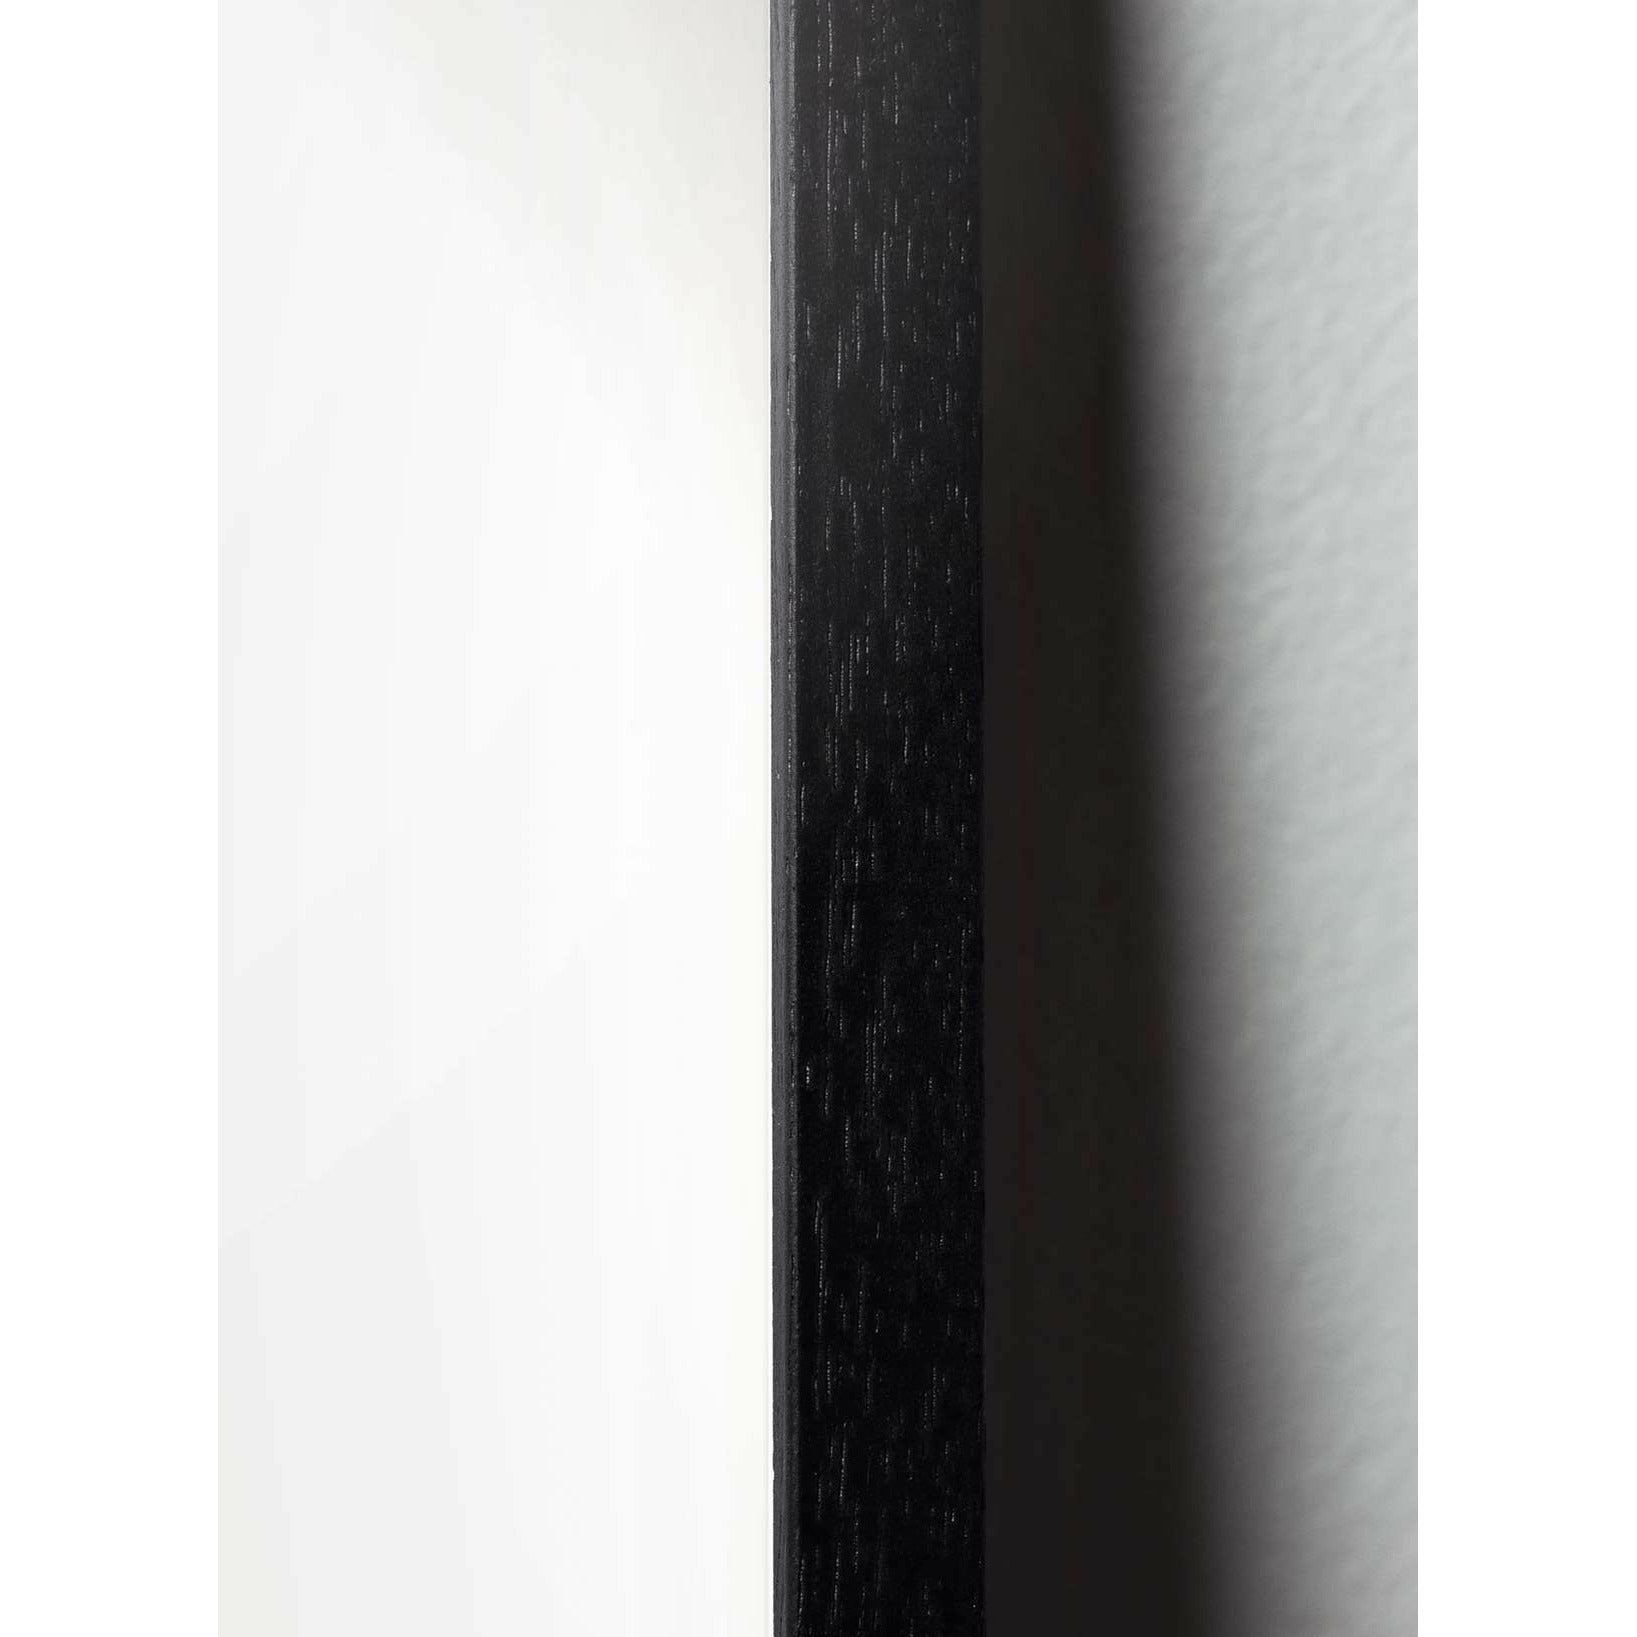 Brainchild Munaparaatijuliste, mustasta lakatusta puusta valmistettu runko, A5